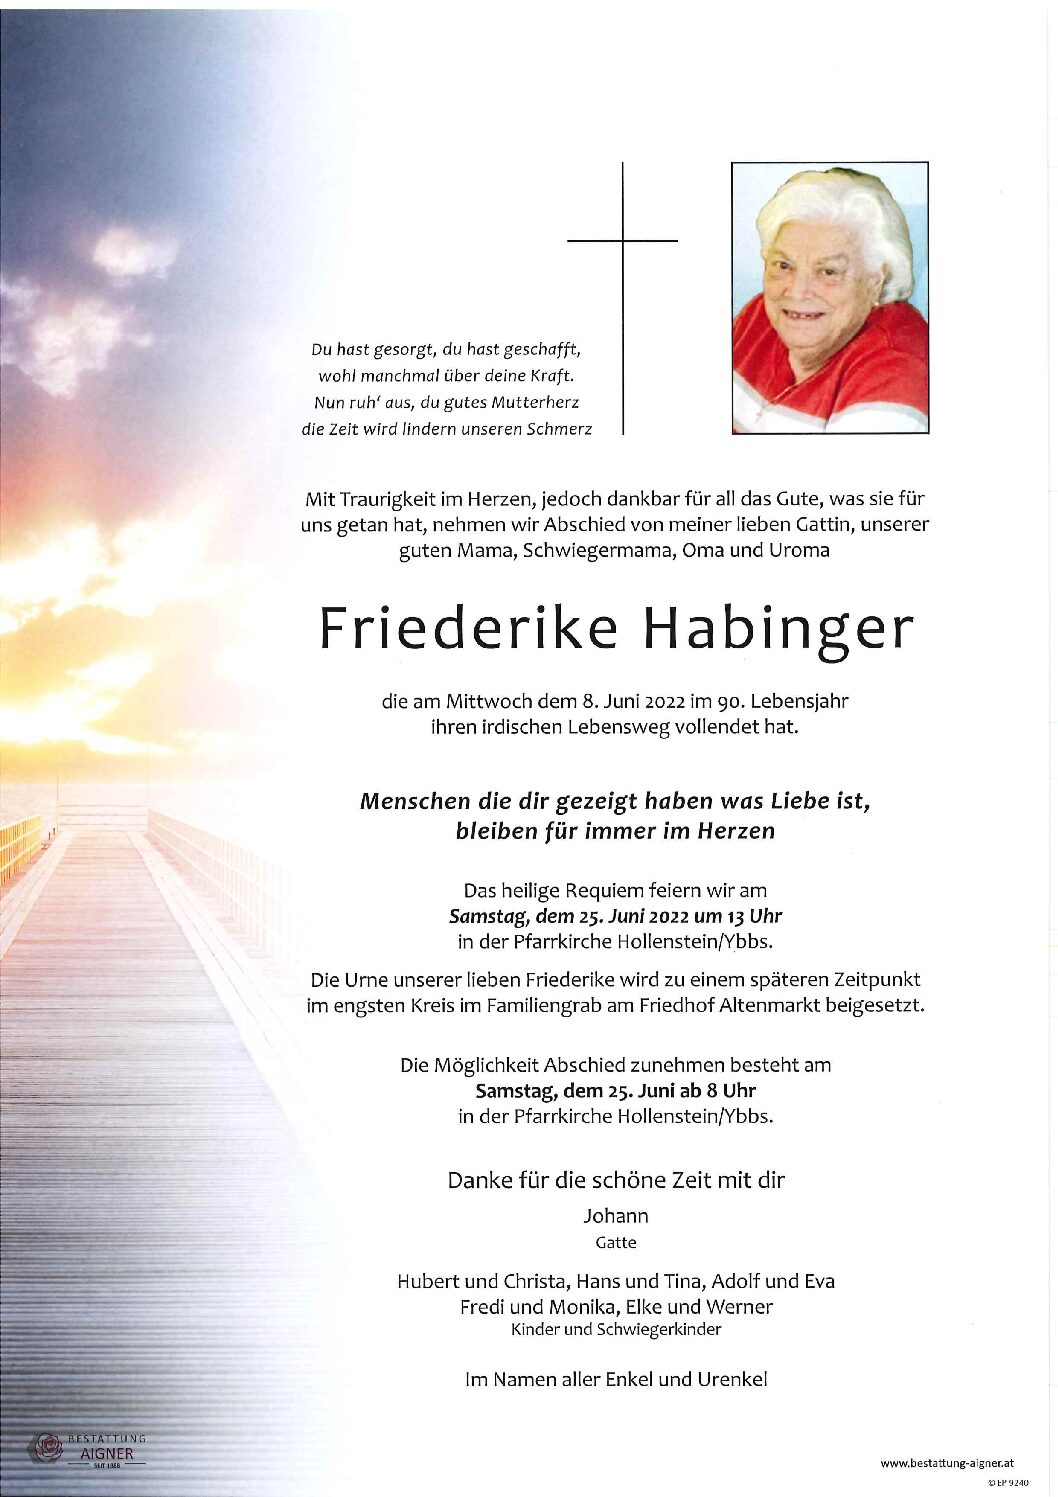 Friederike Habinger